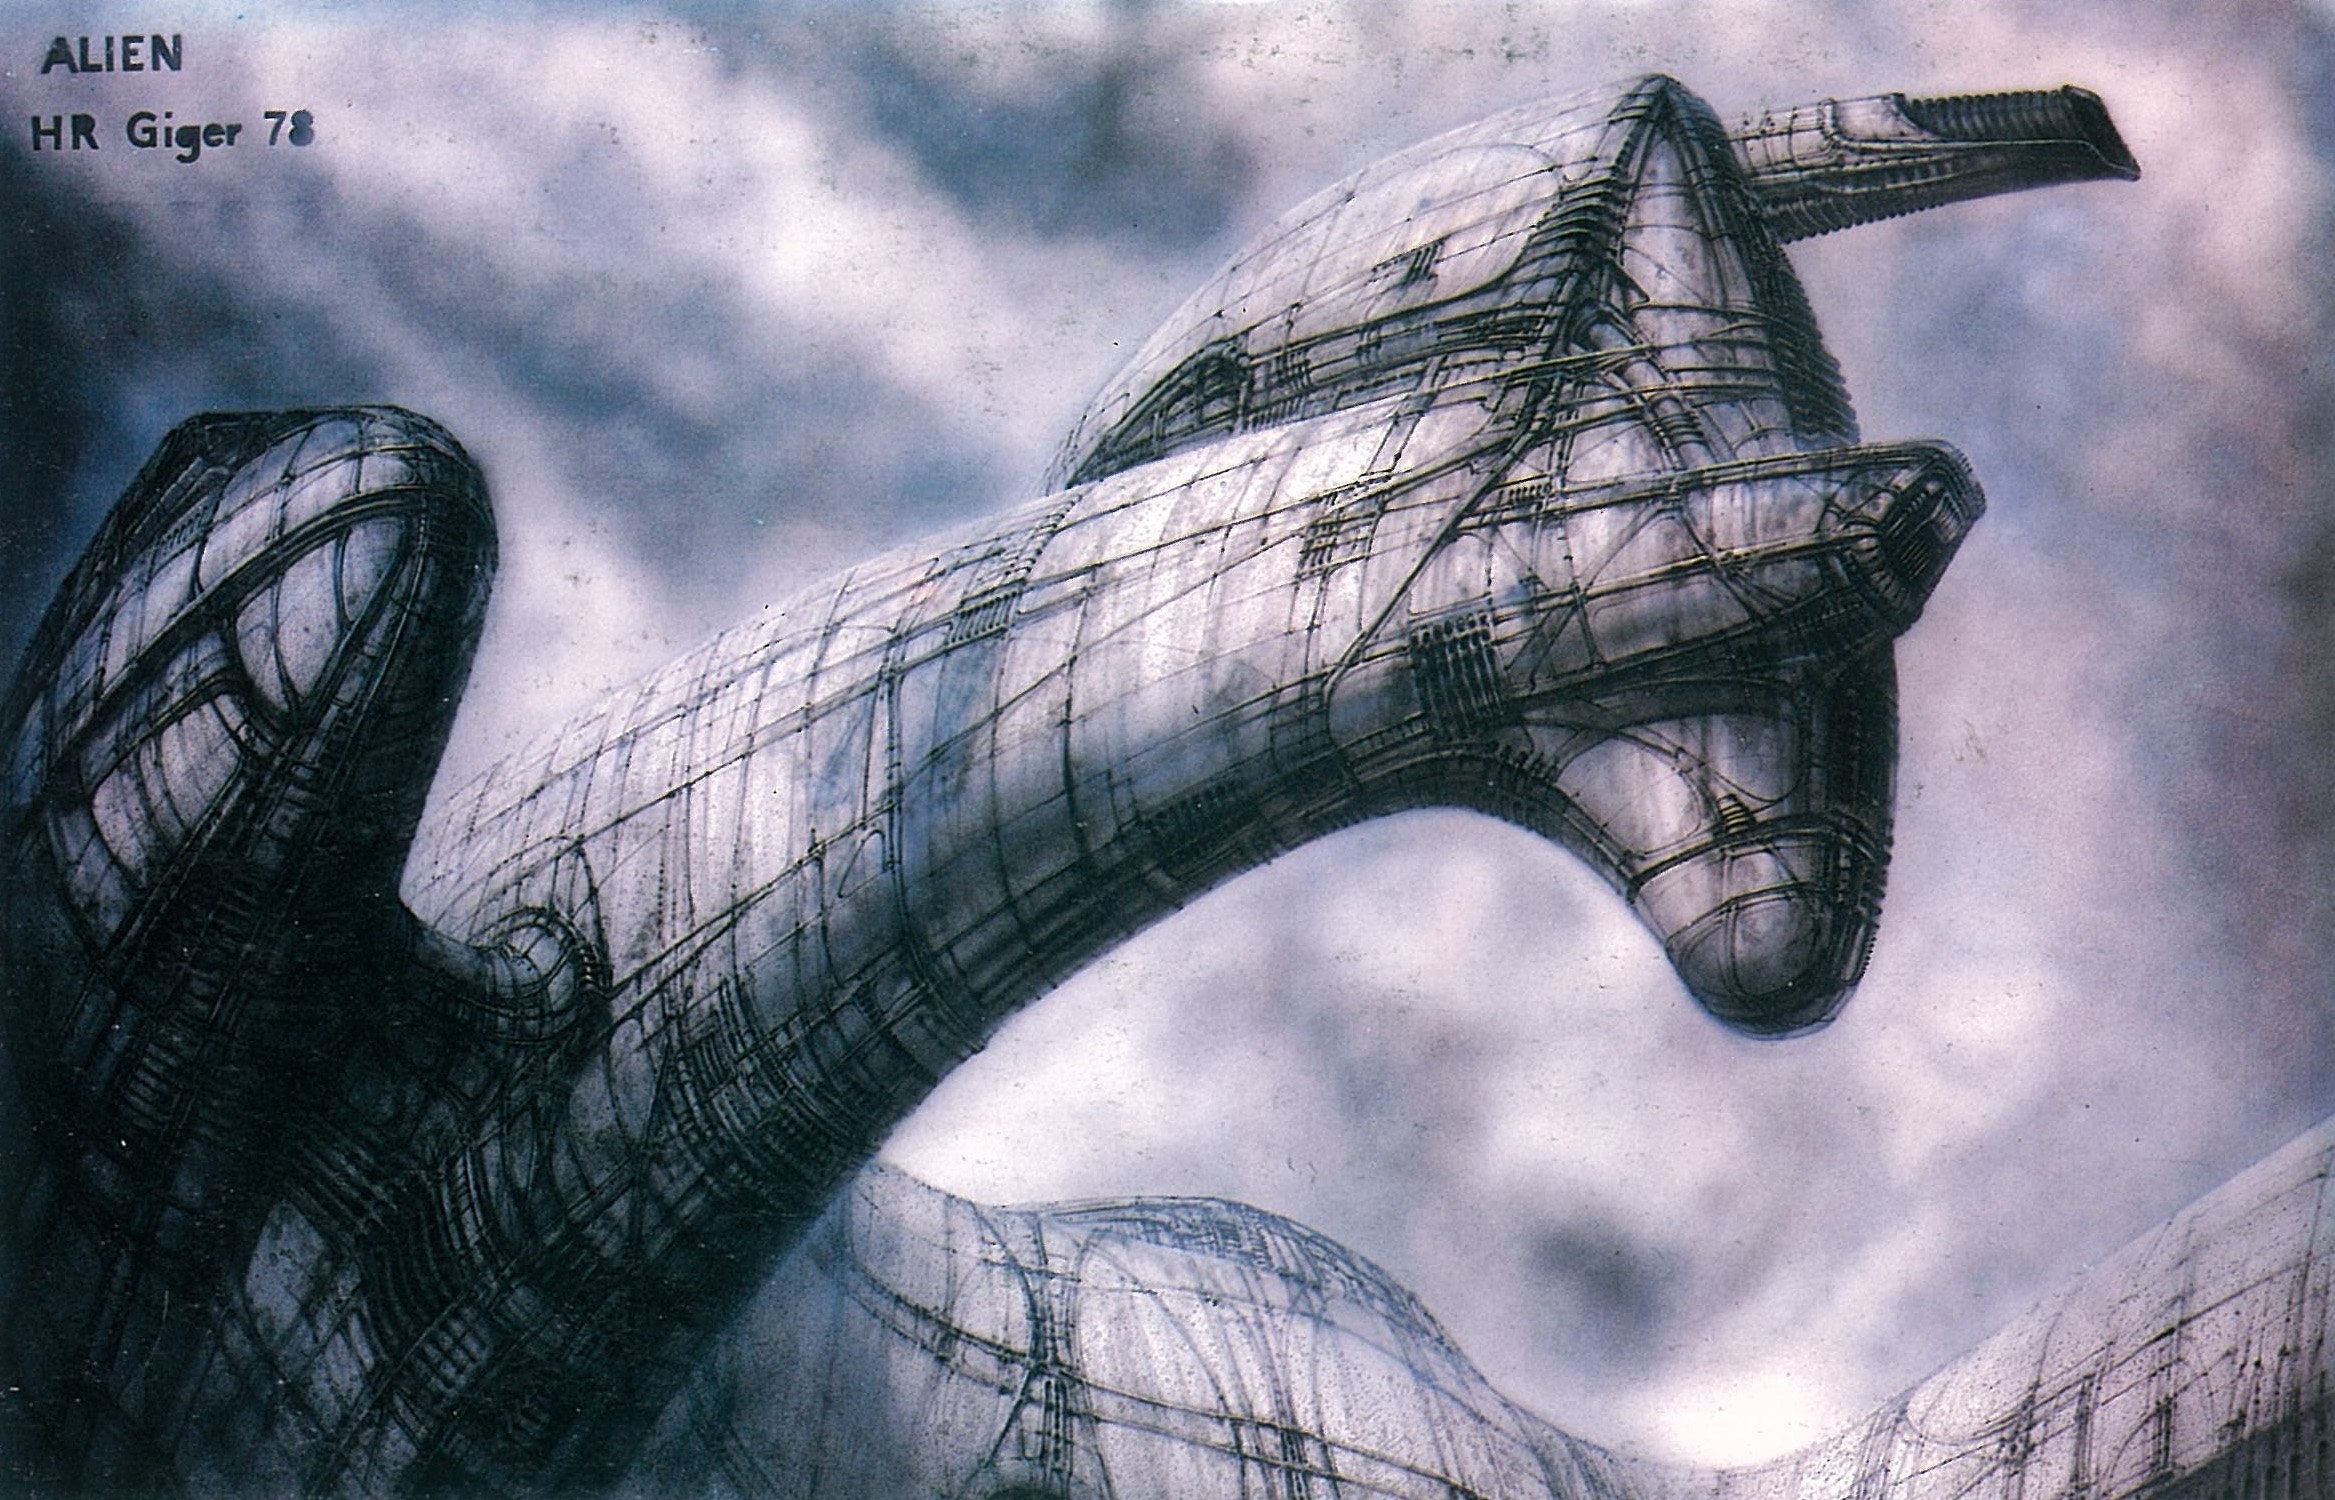 Dark Art Artwork Fantasy Artistic Original Psychedelic - Hr Giger Alien Ship , HD Wallpaper & Backgrounds